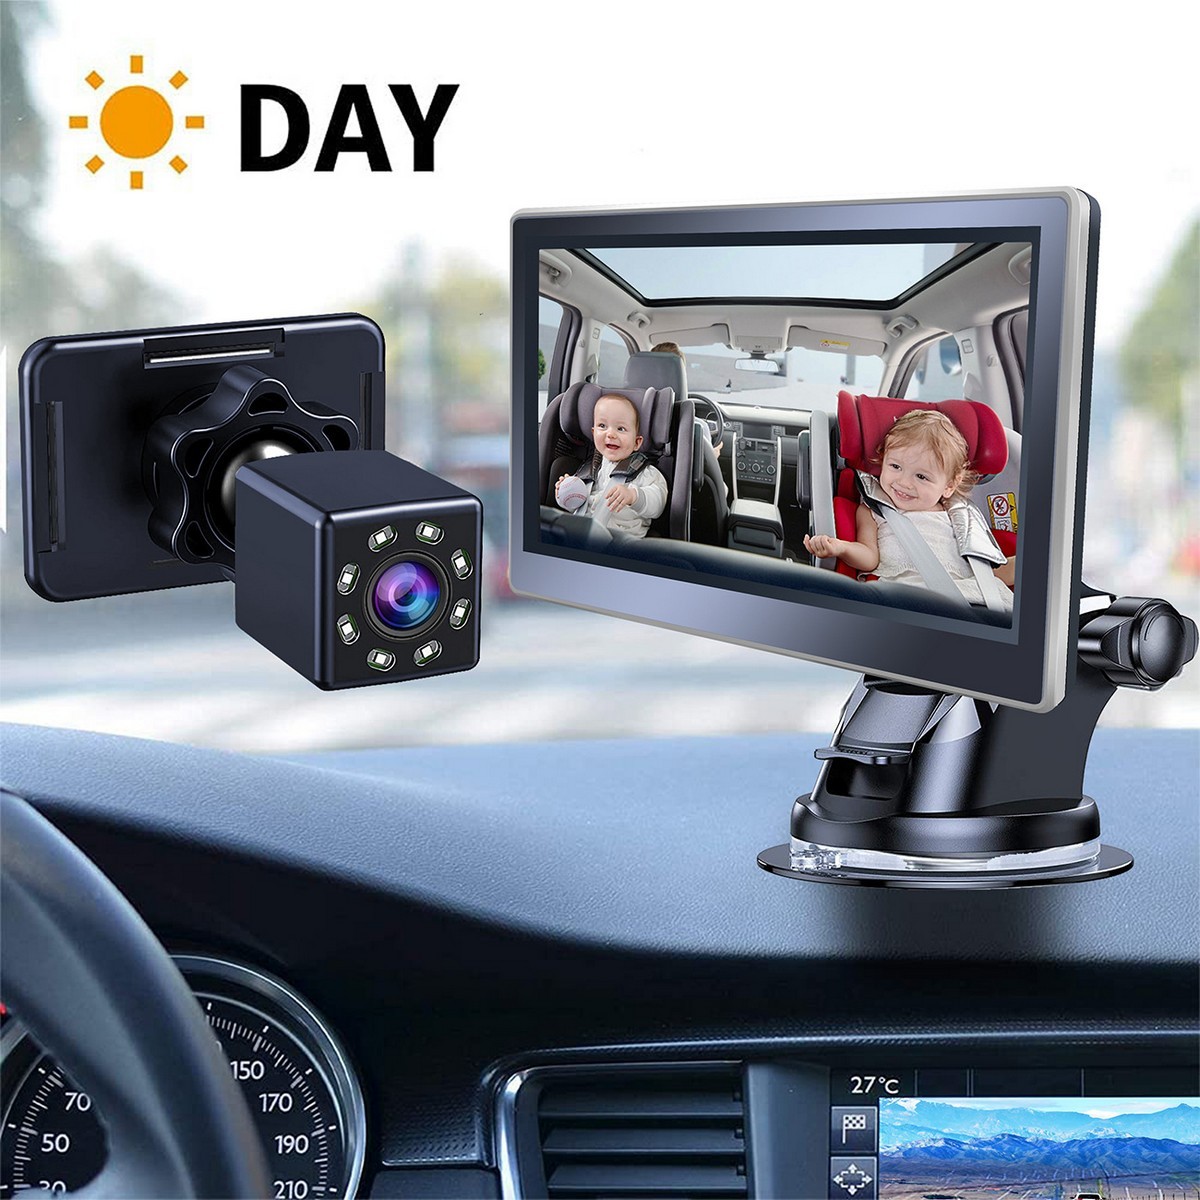 HD car camera - daily monitoring